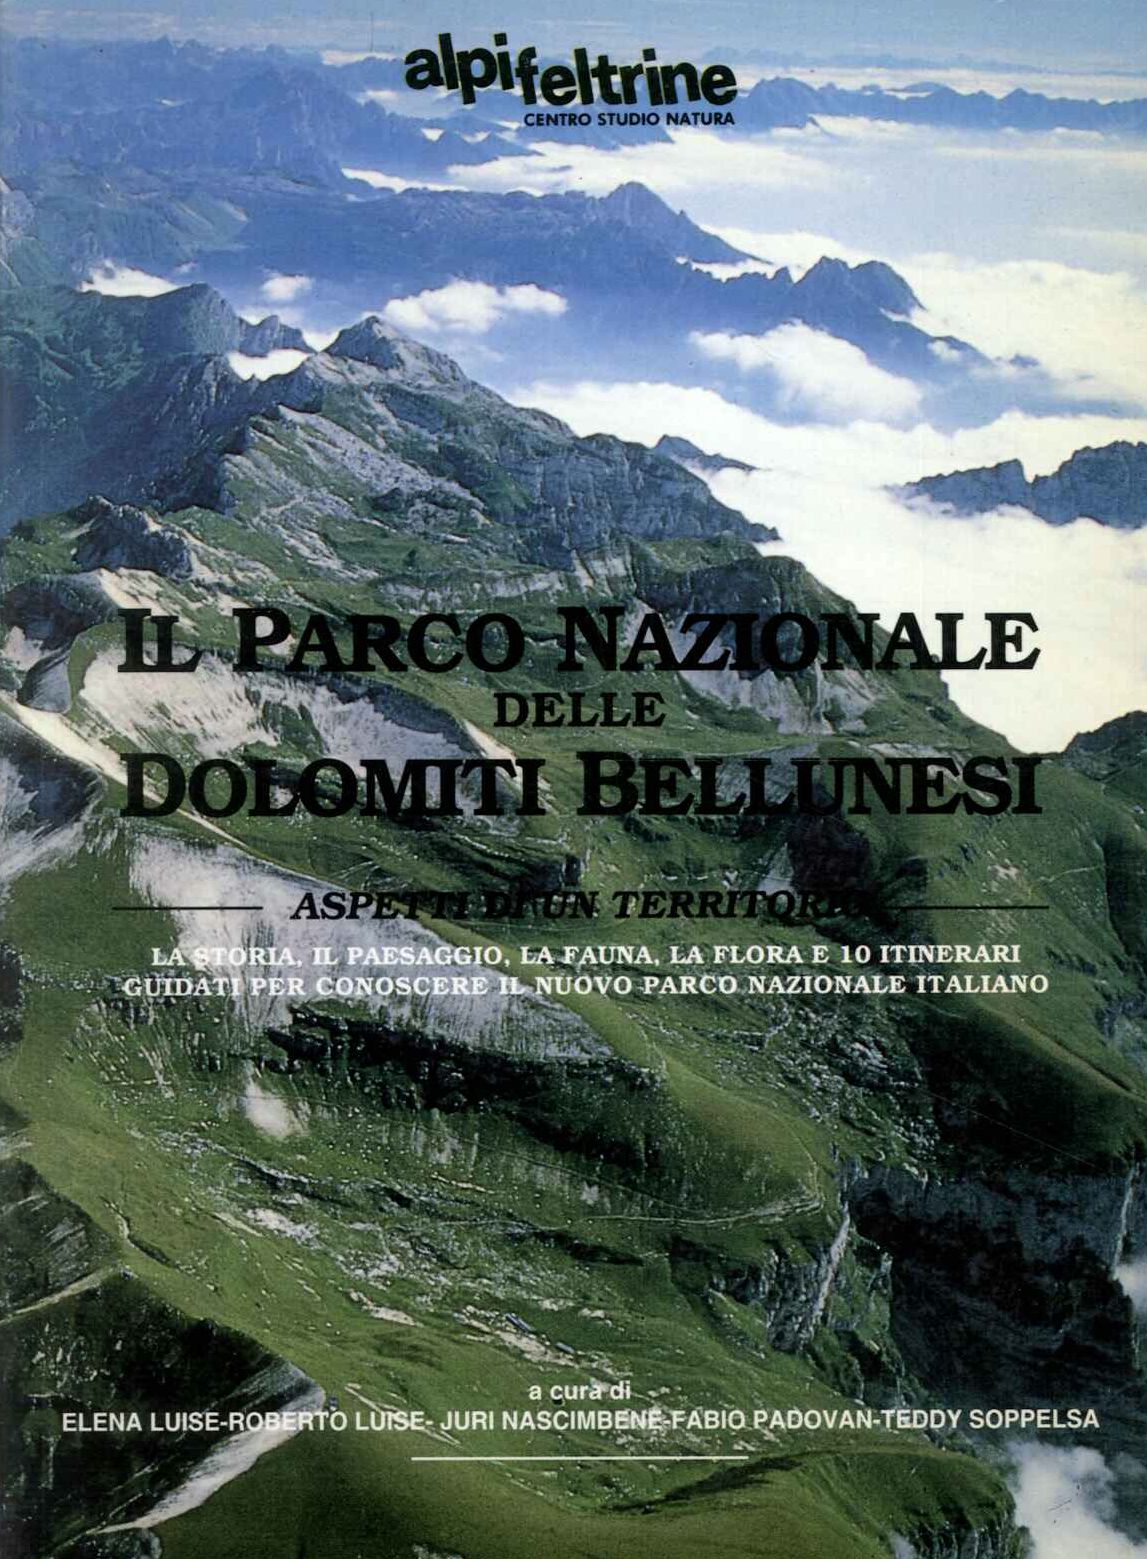 Parco nazionale delle Dolomiti Bellunesi aspetti di un territori